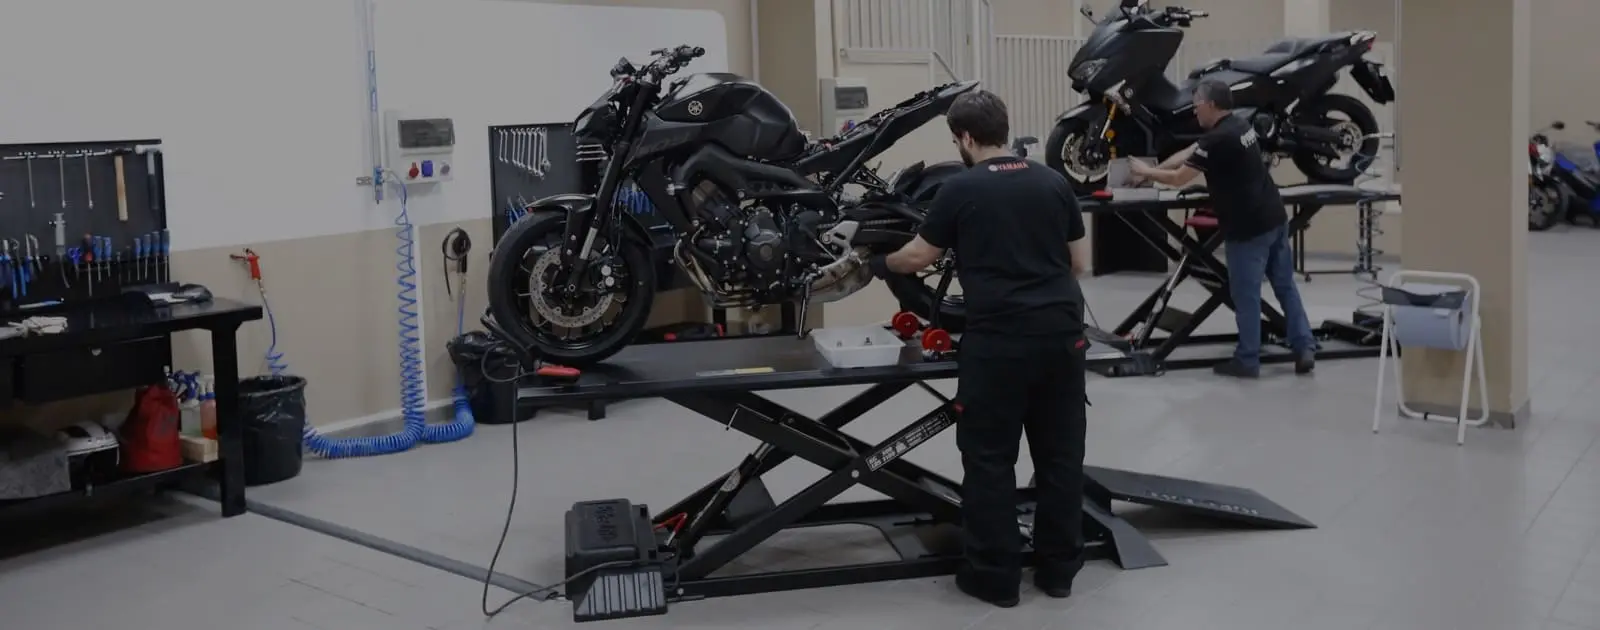 talleres moto valencia - Que se estudia para reparar motos